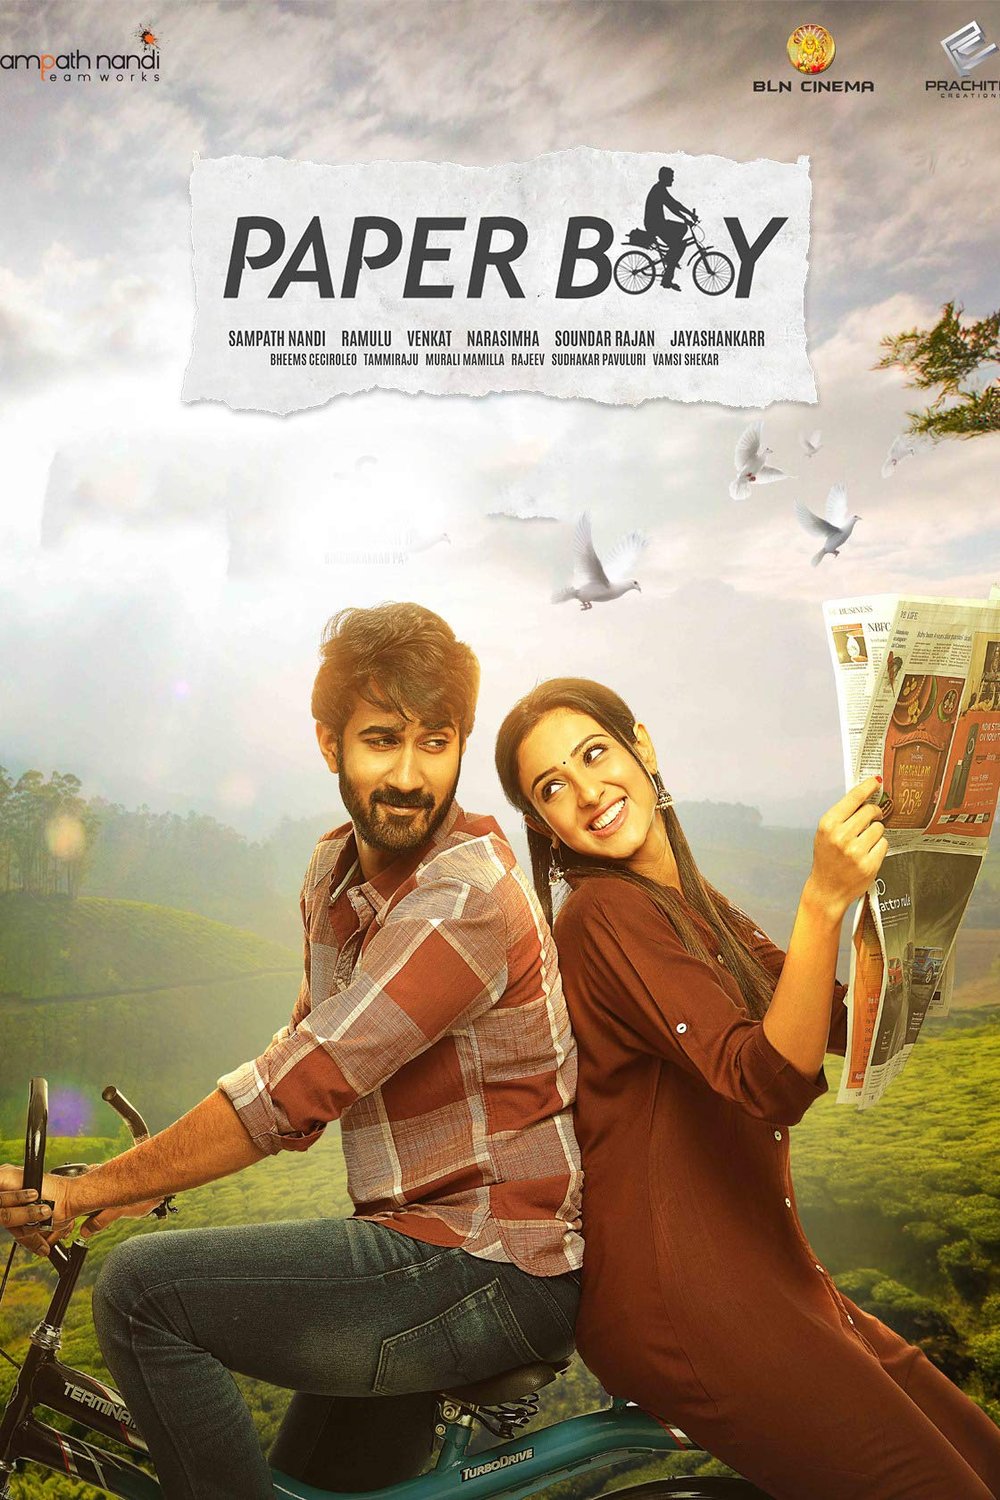 L'affiche originale du film Paper Boy en Telugu